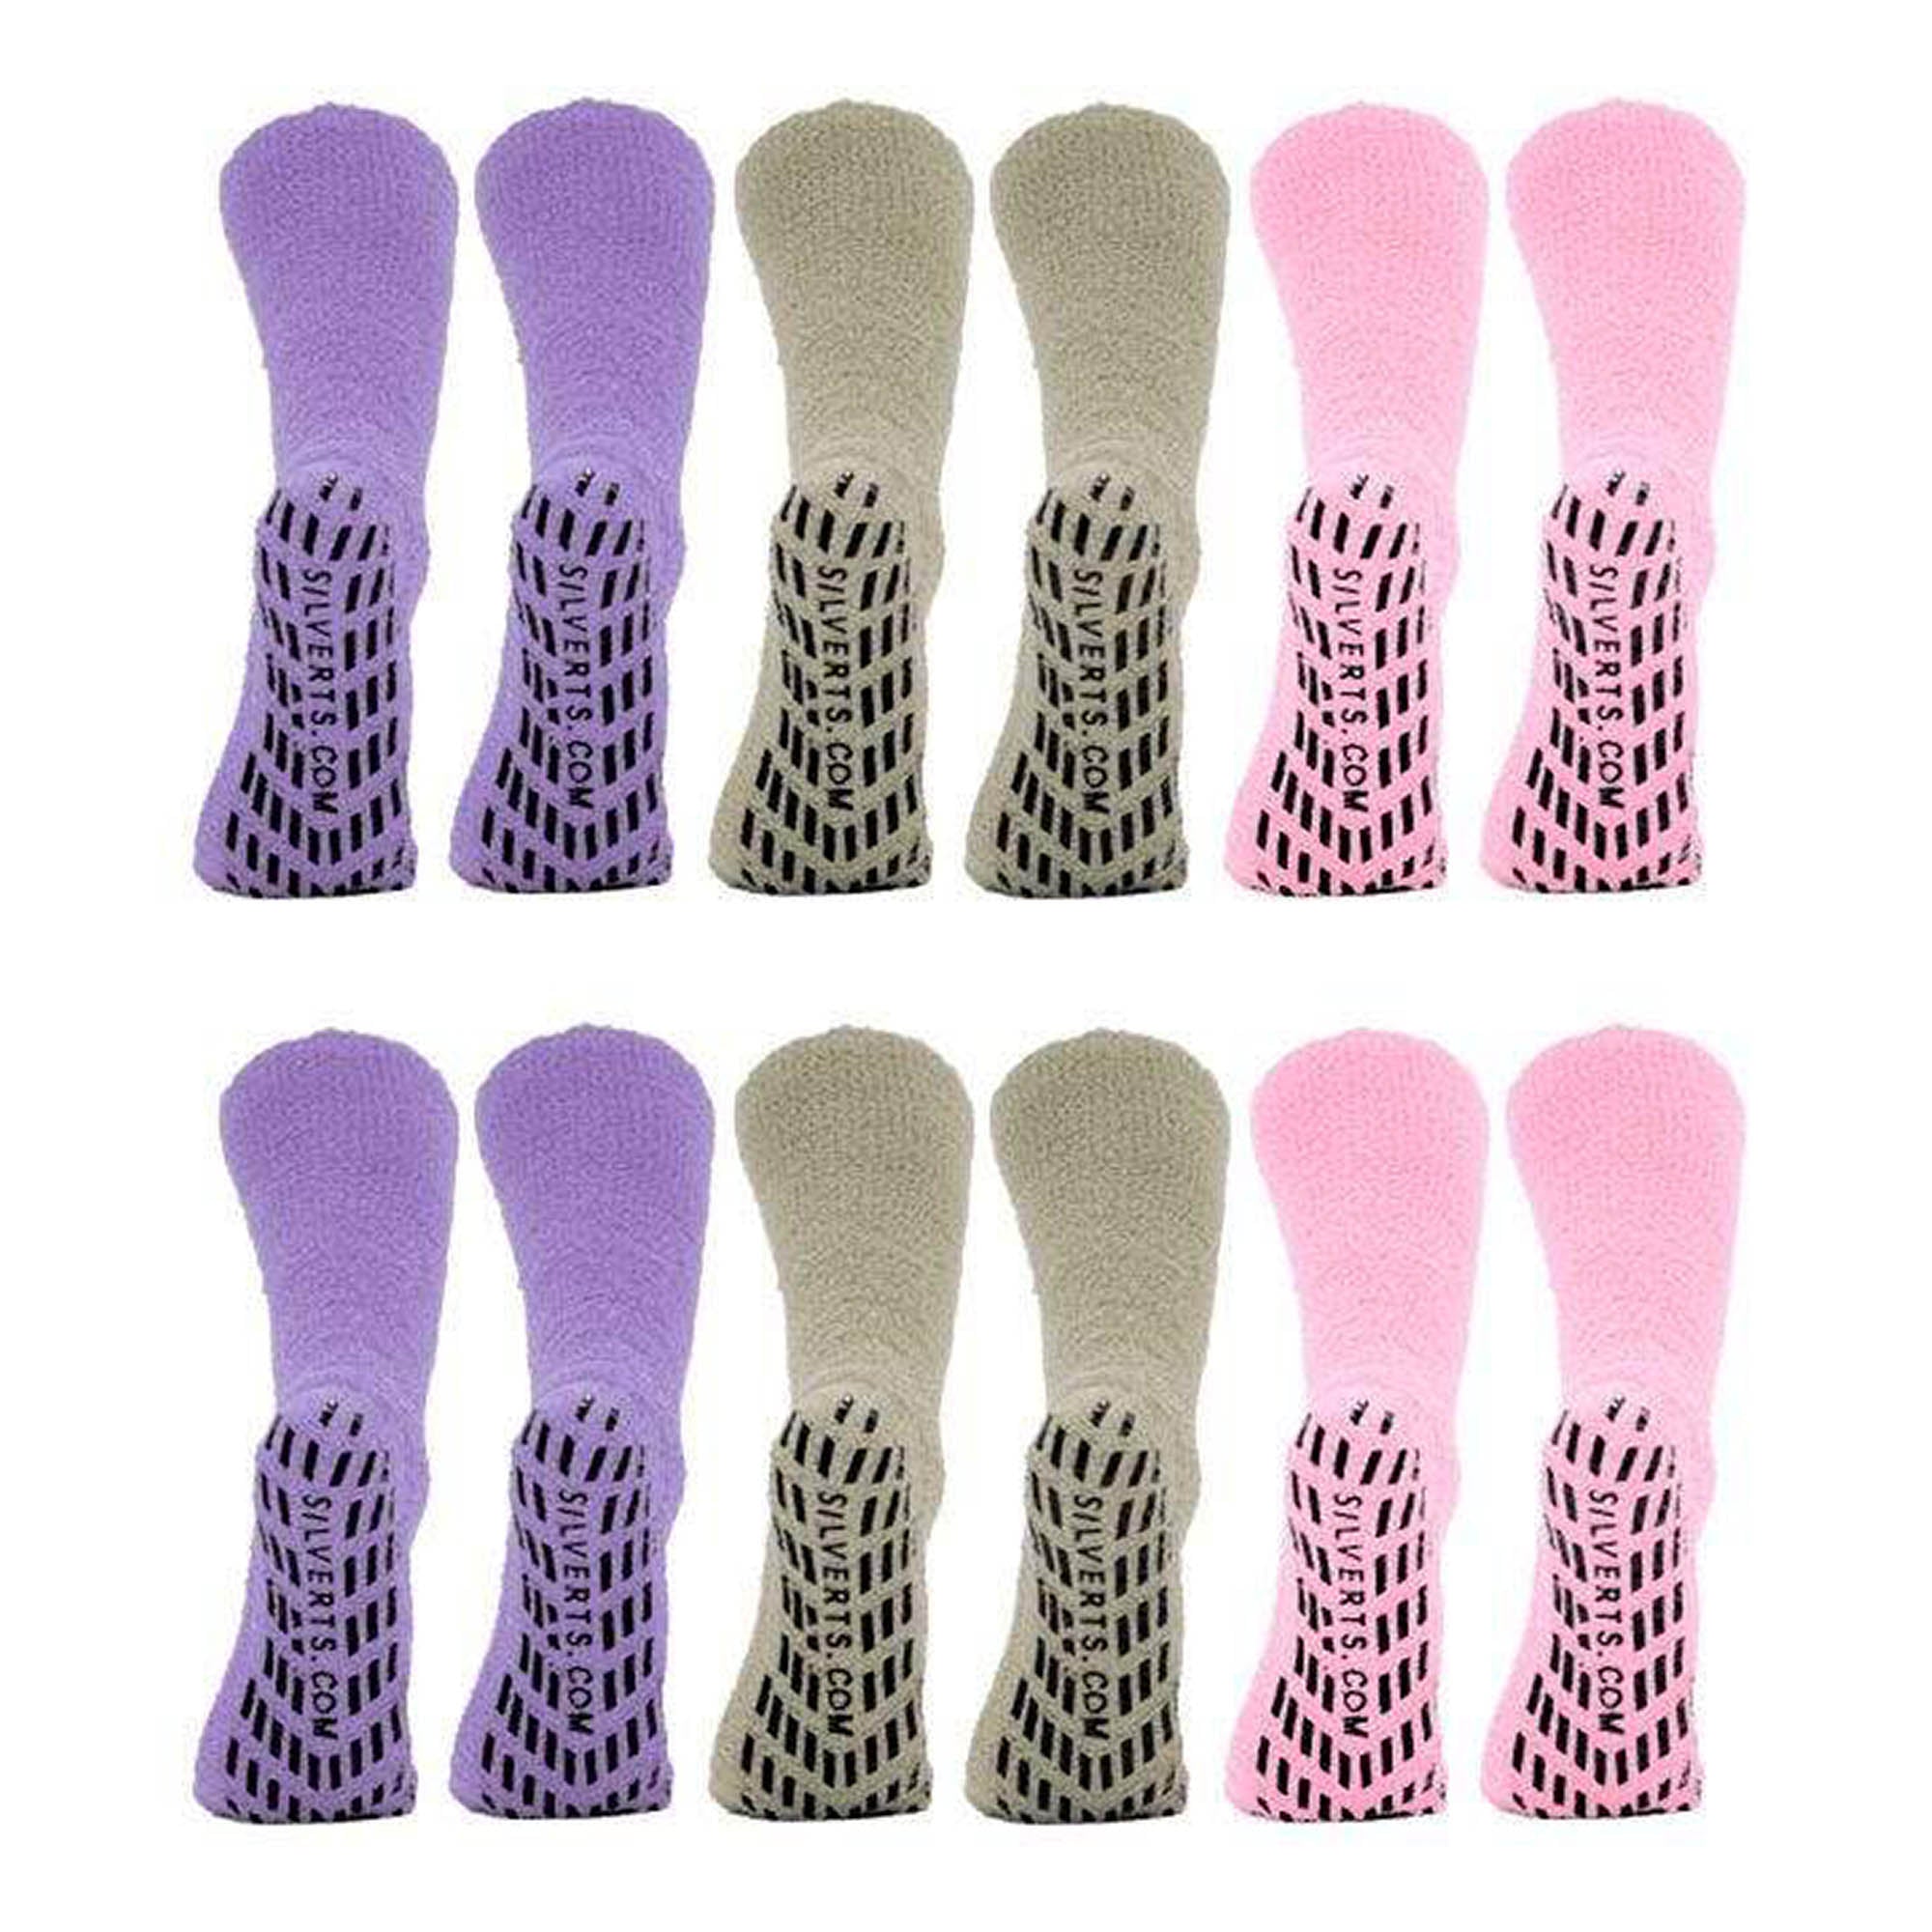 Silverts Slipper Socks - Set Of 6 - Women's Pack - OS